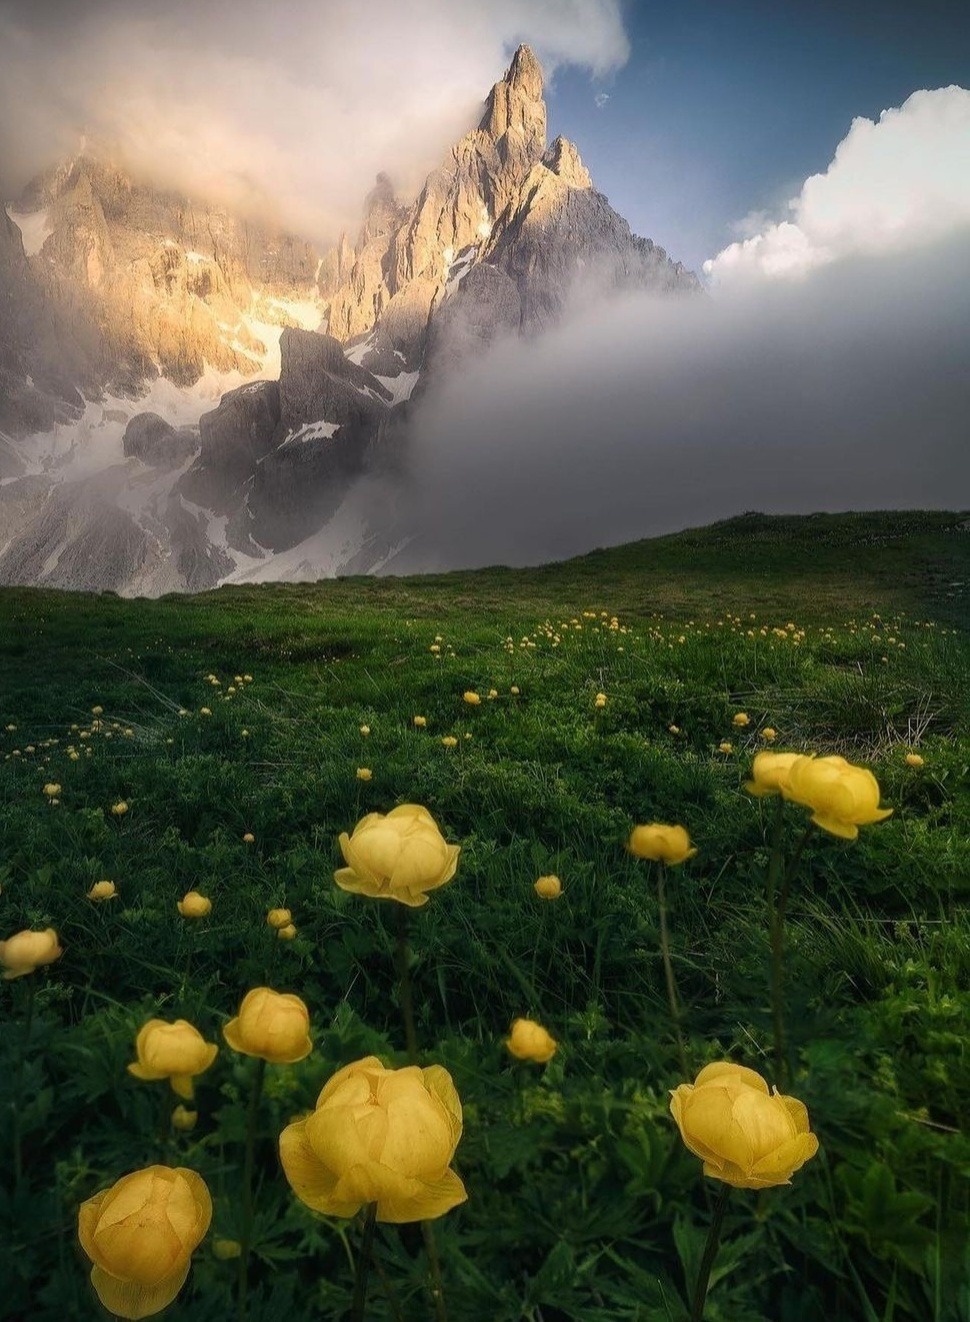 Природа Горный пейзаж с желтыми тюльпанами, хотя могу, насчет цветов, ошибаться.